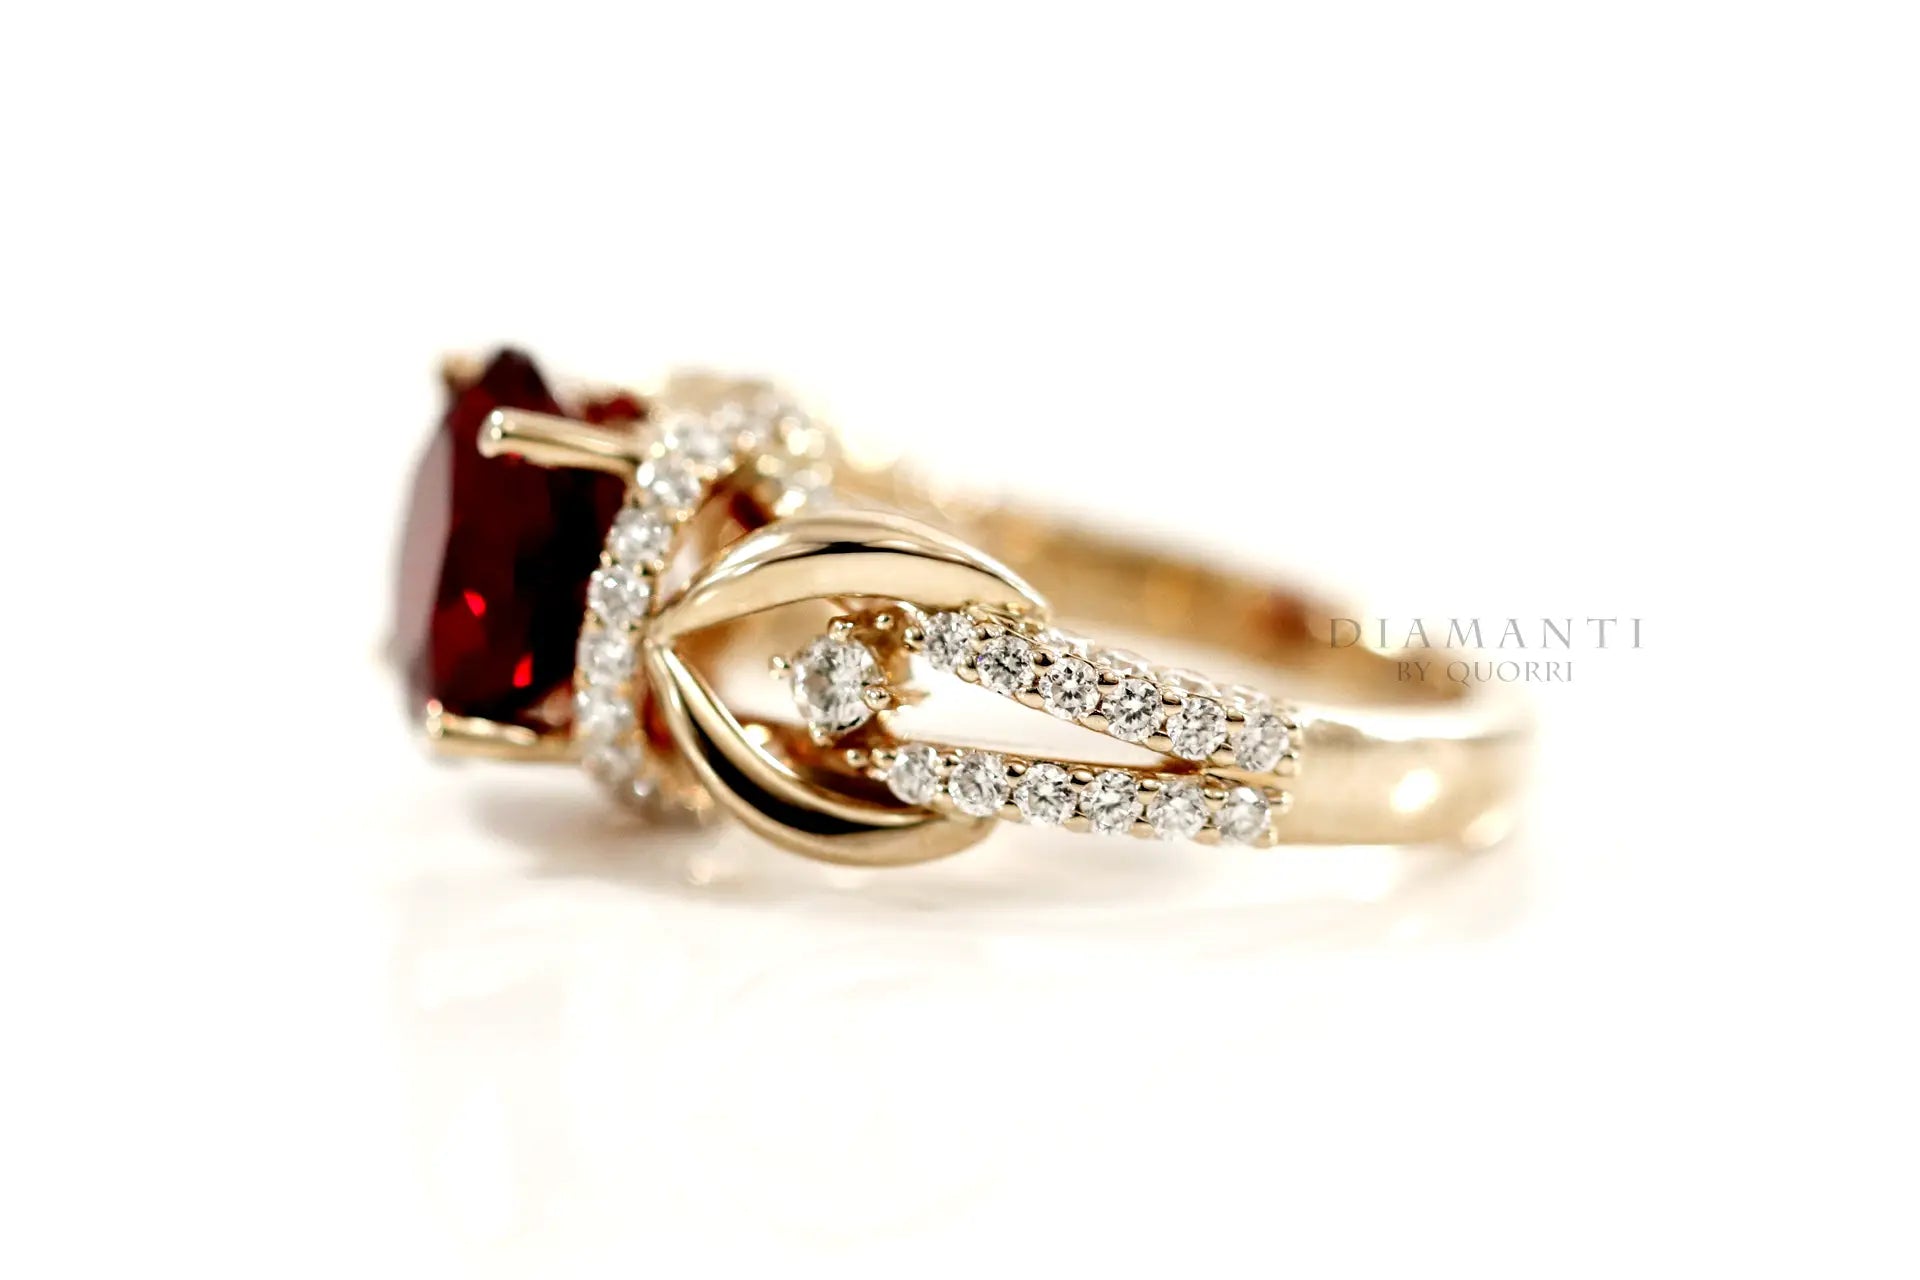 designer 18k yellow gold vintage 3 carat ruby gemstone engagement ring Quorri